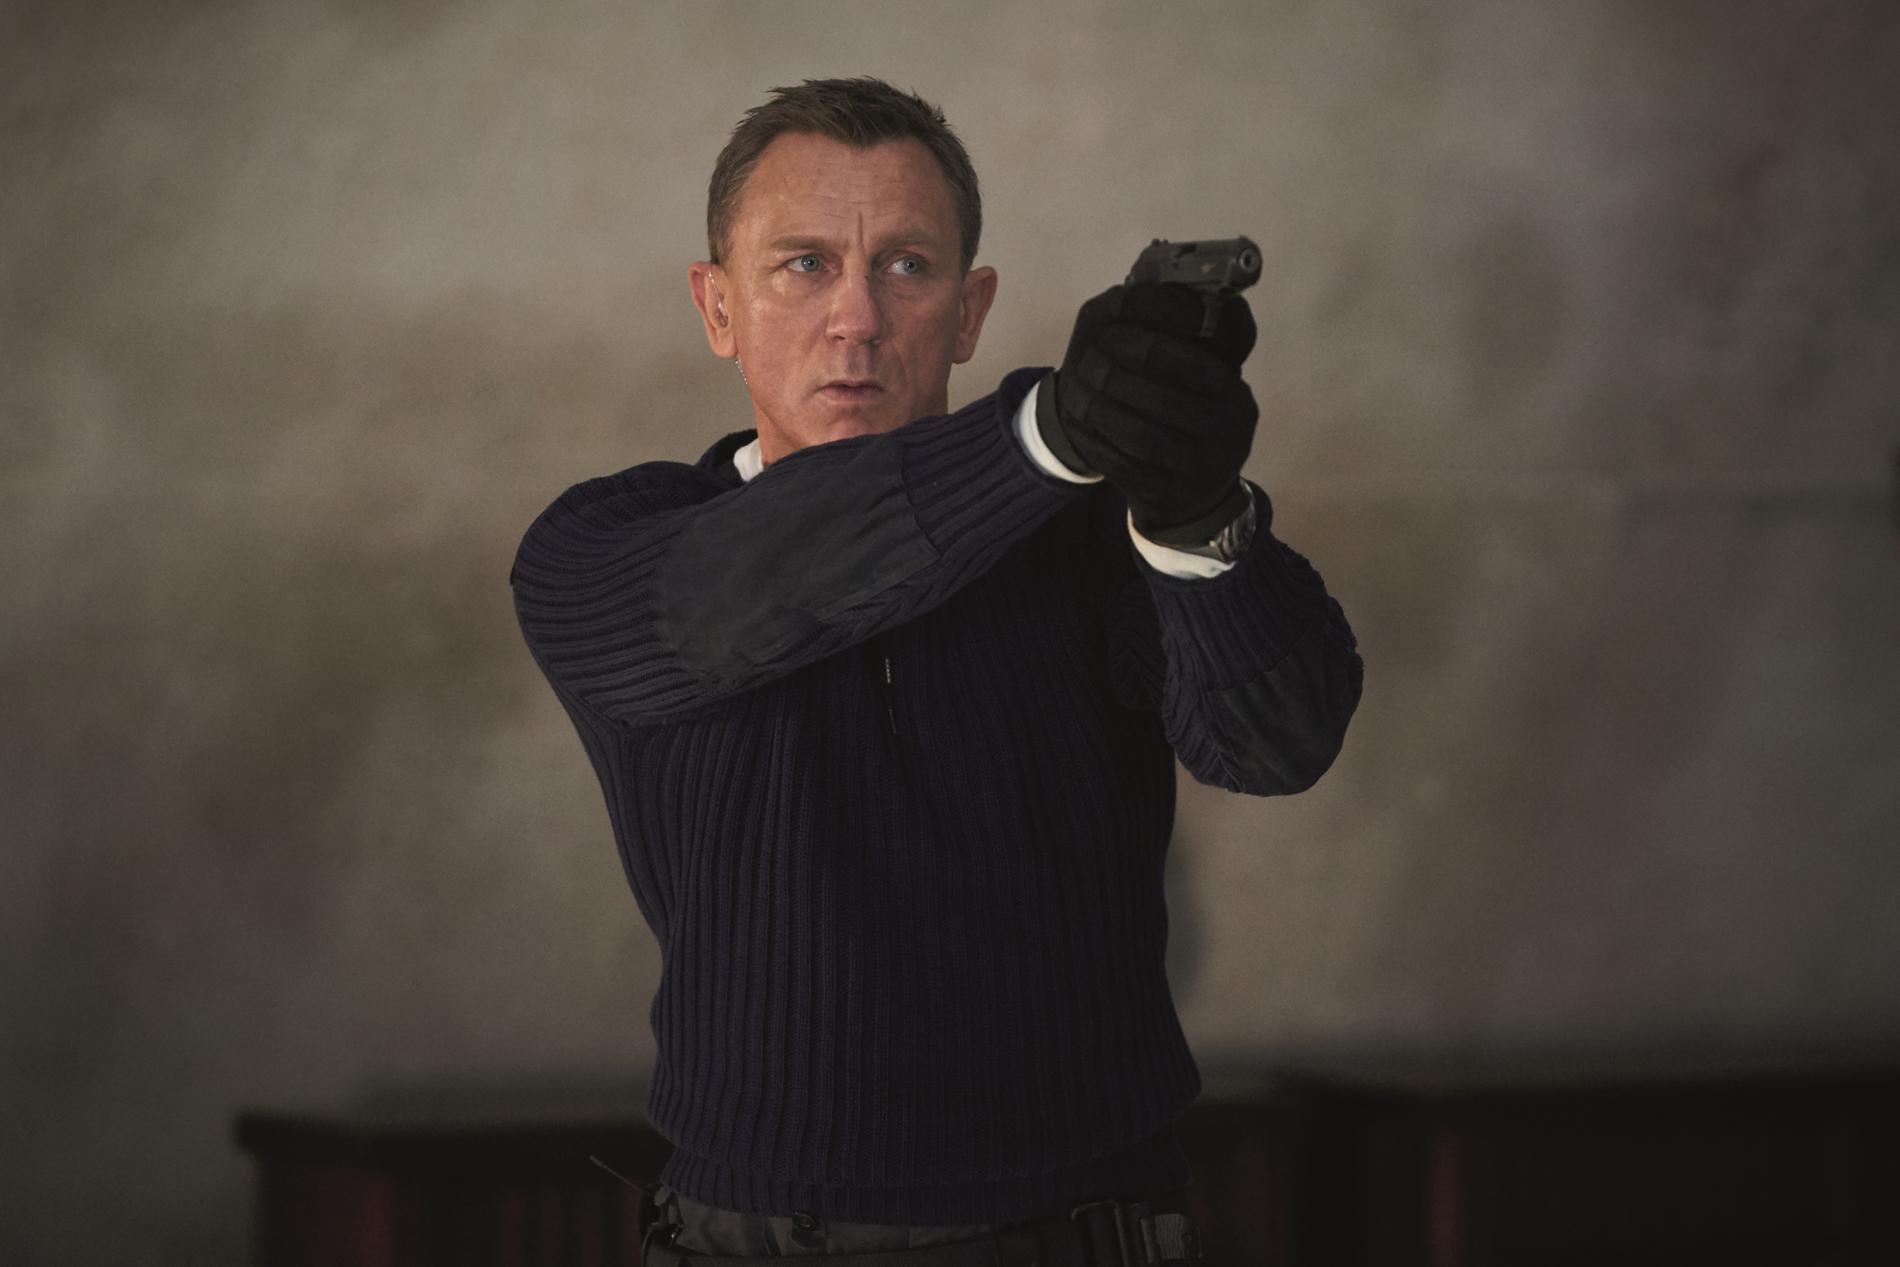 «No Time To Die» med Daniel Craig som Bond, James Bond, får norsk premiere 1. oktober.